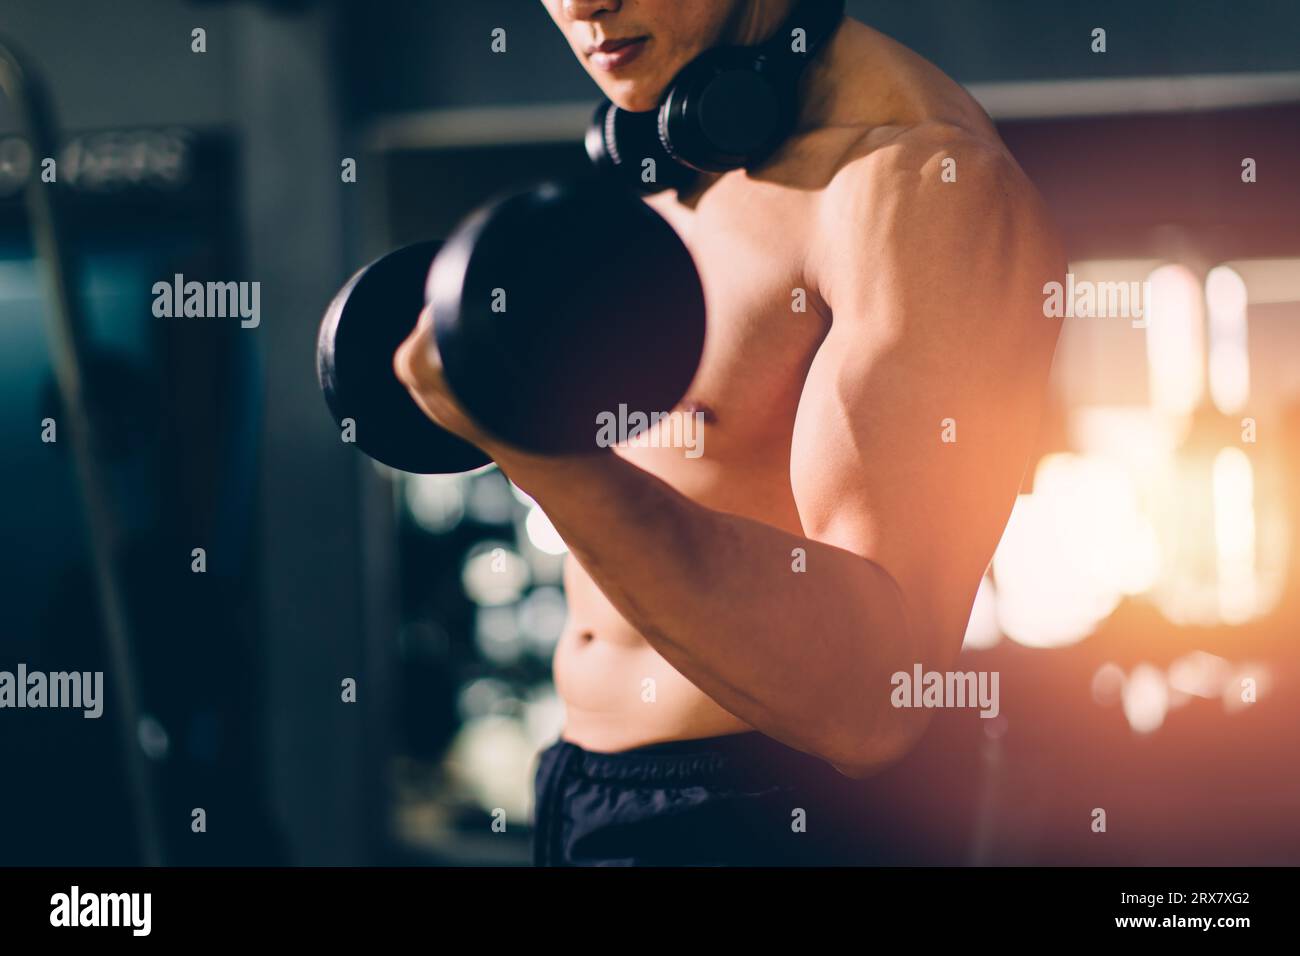 Sport bodybuilding maschile bella forza perfetta torace muscoloso da allenamento muscolare core in palestra sport club Foto Stock